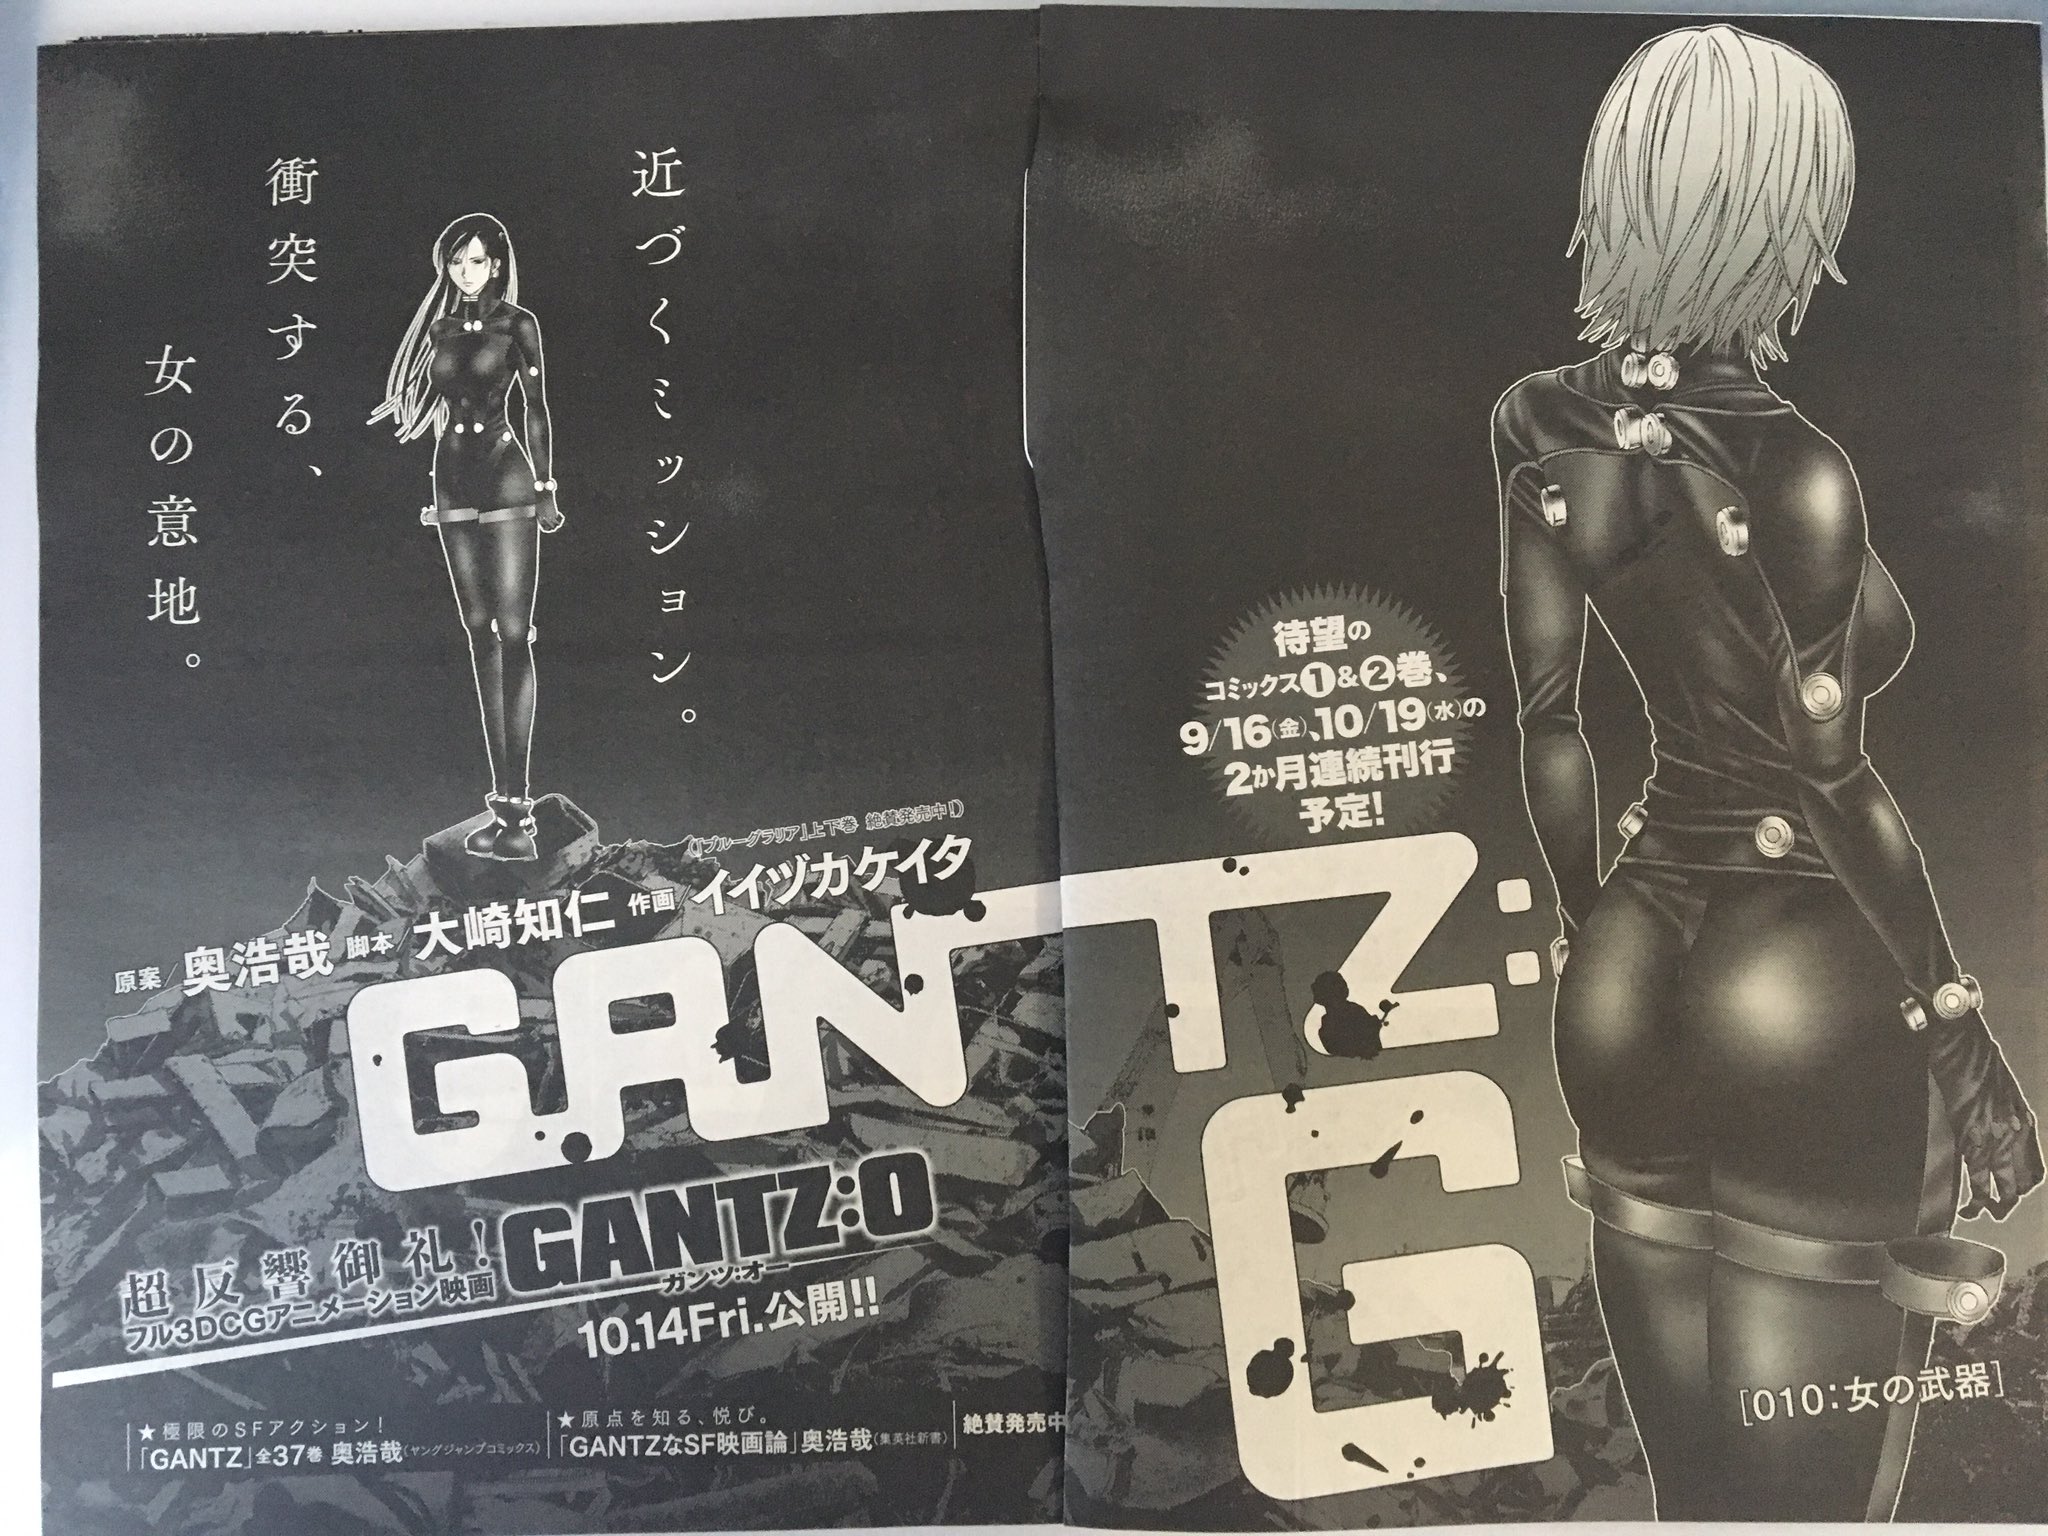 イイヅカケイタ 昨日発売のミラクルジャンプにgantz G 10話載っております ハンドガンなどの訓練回になっております コミックも2ヶ月連続で出ます 映画gantz Oは10月14日公開です よろしくお願いします